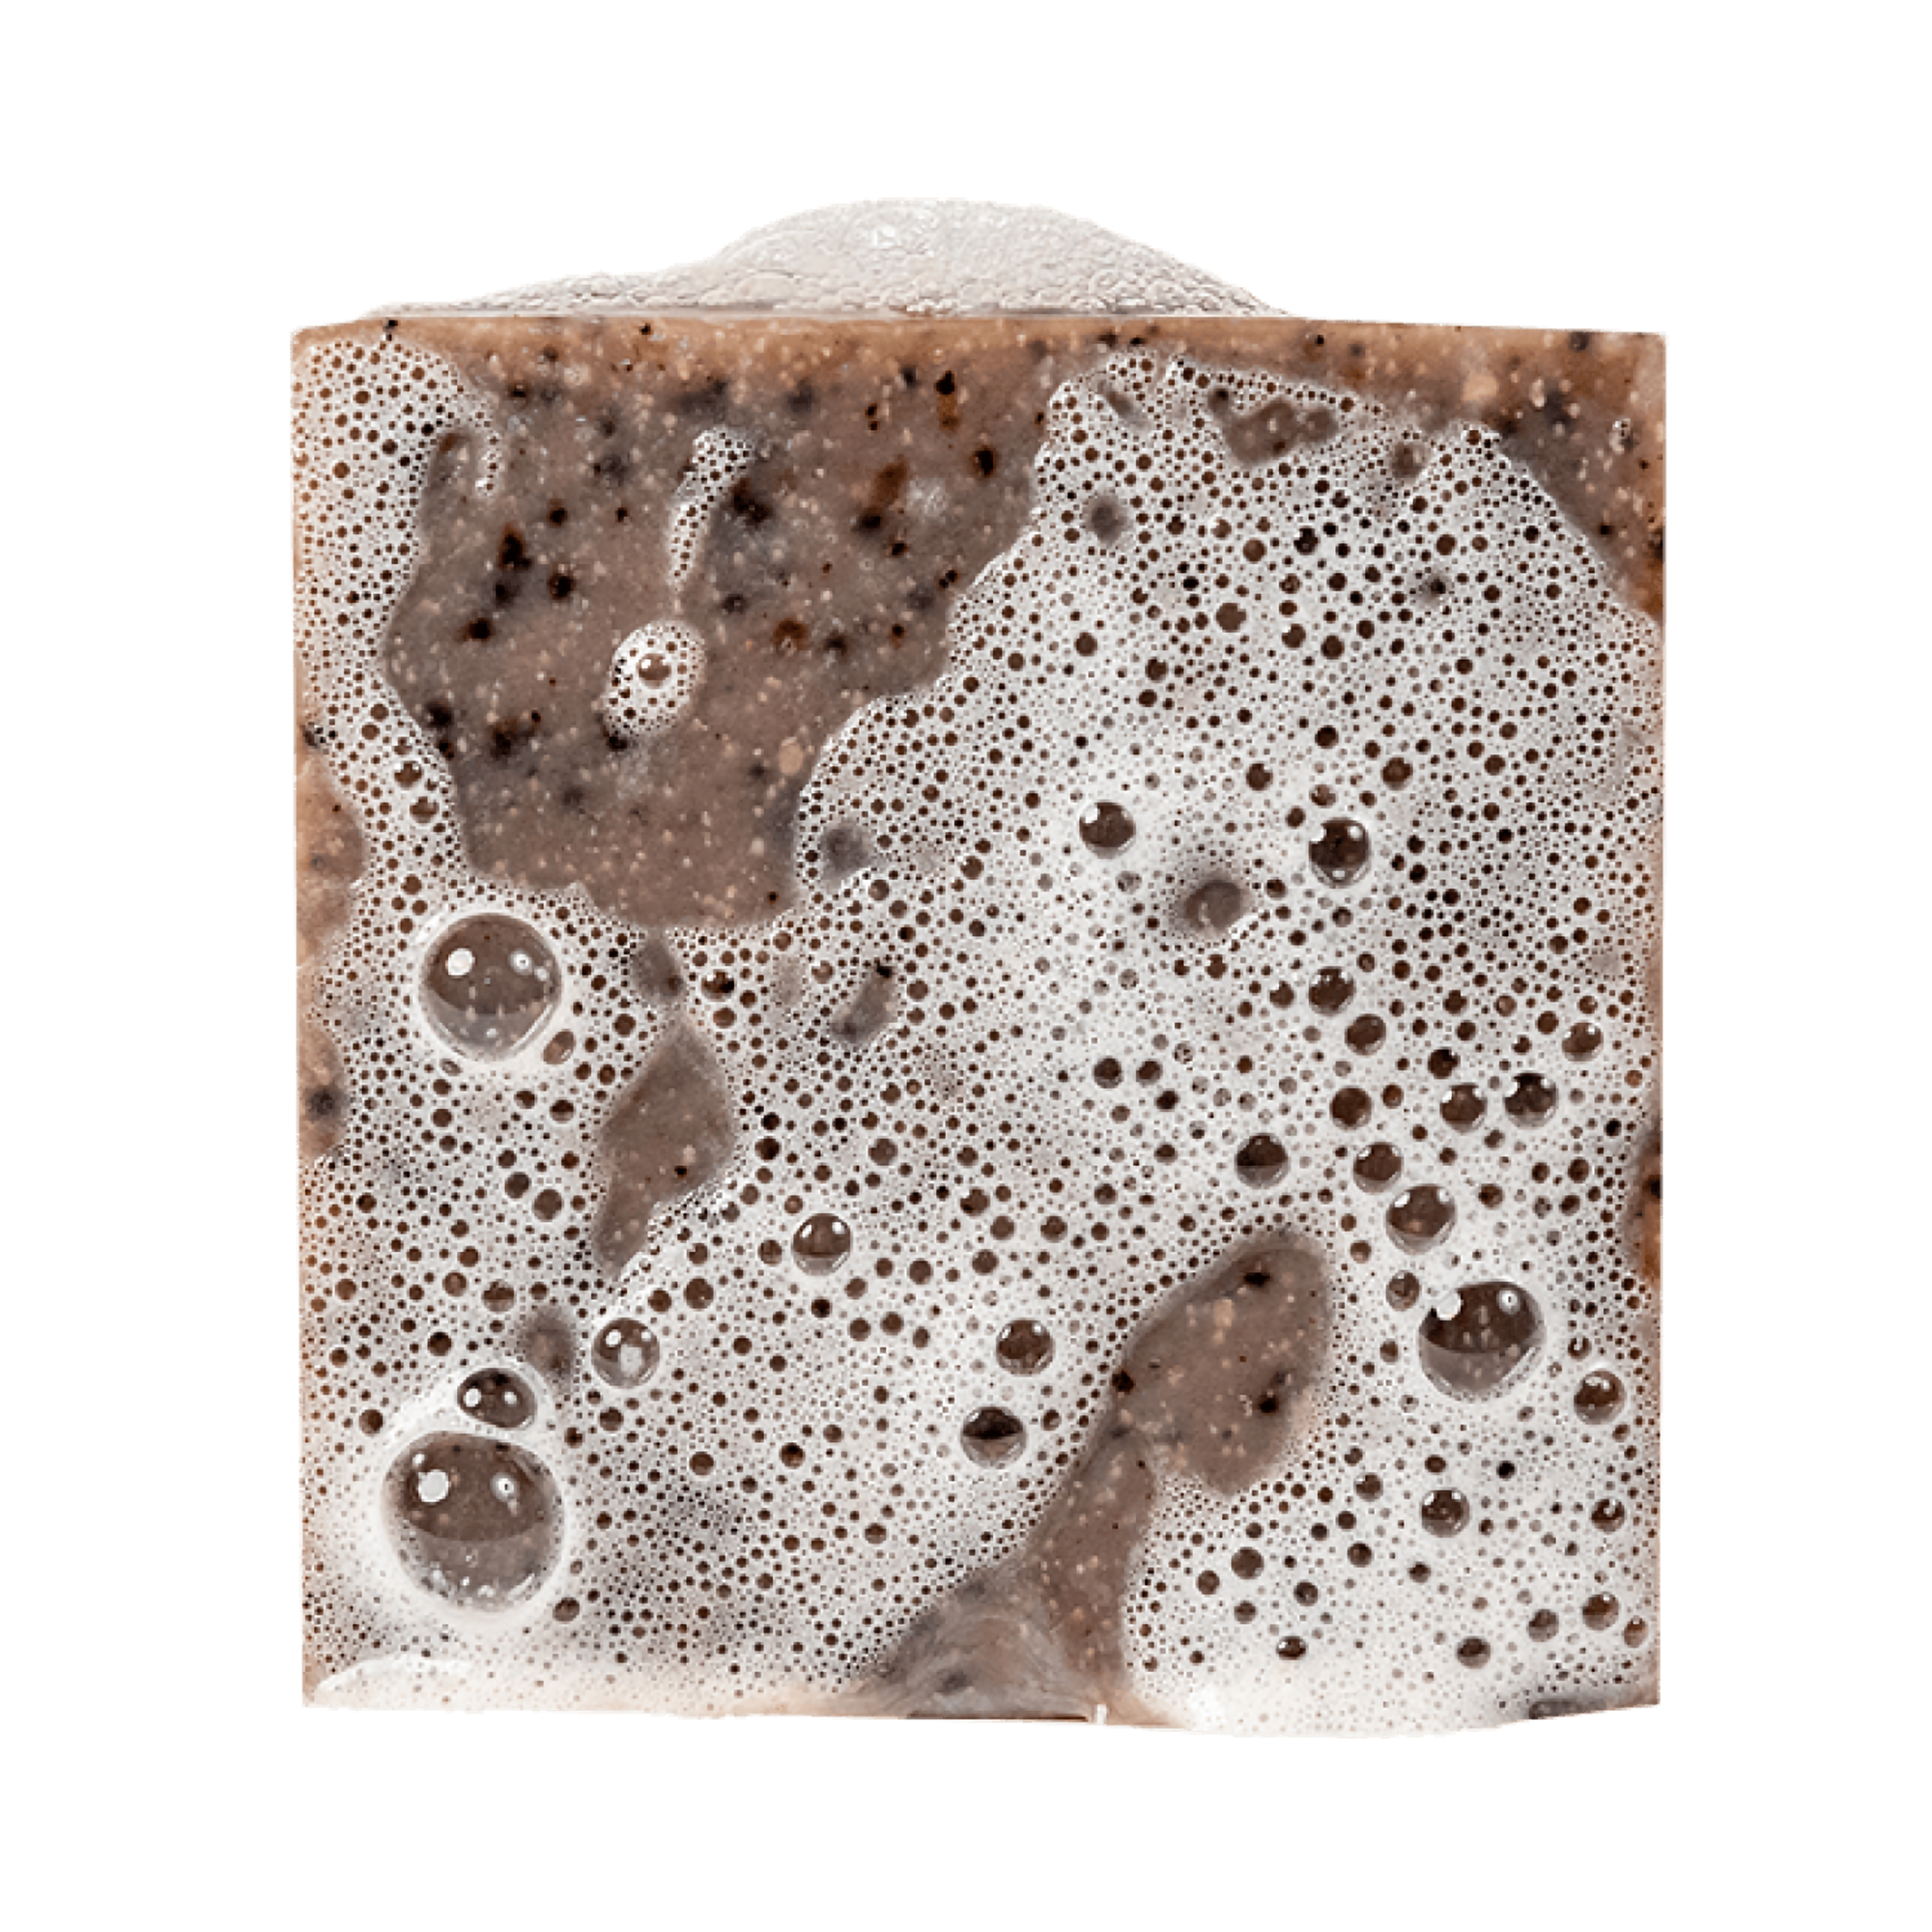 Dr. Squatch Cold Brew Cleanse Bar Soap / 5OZ